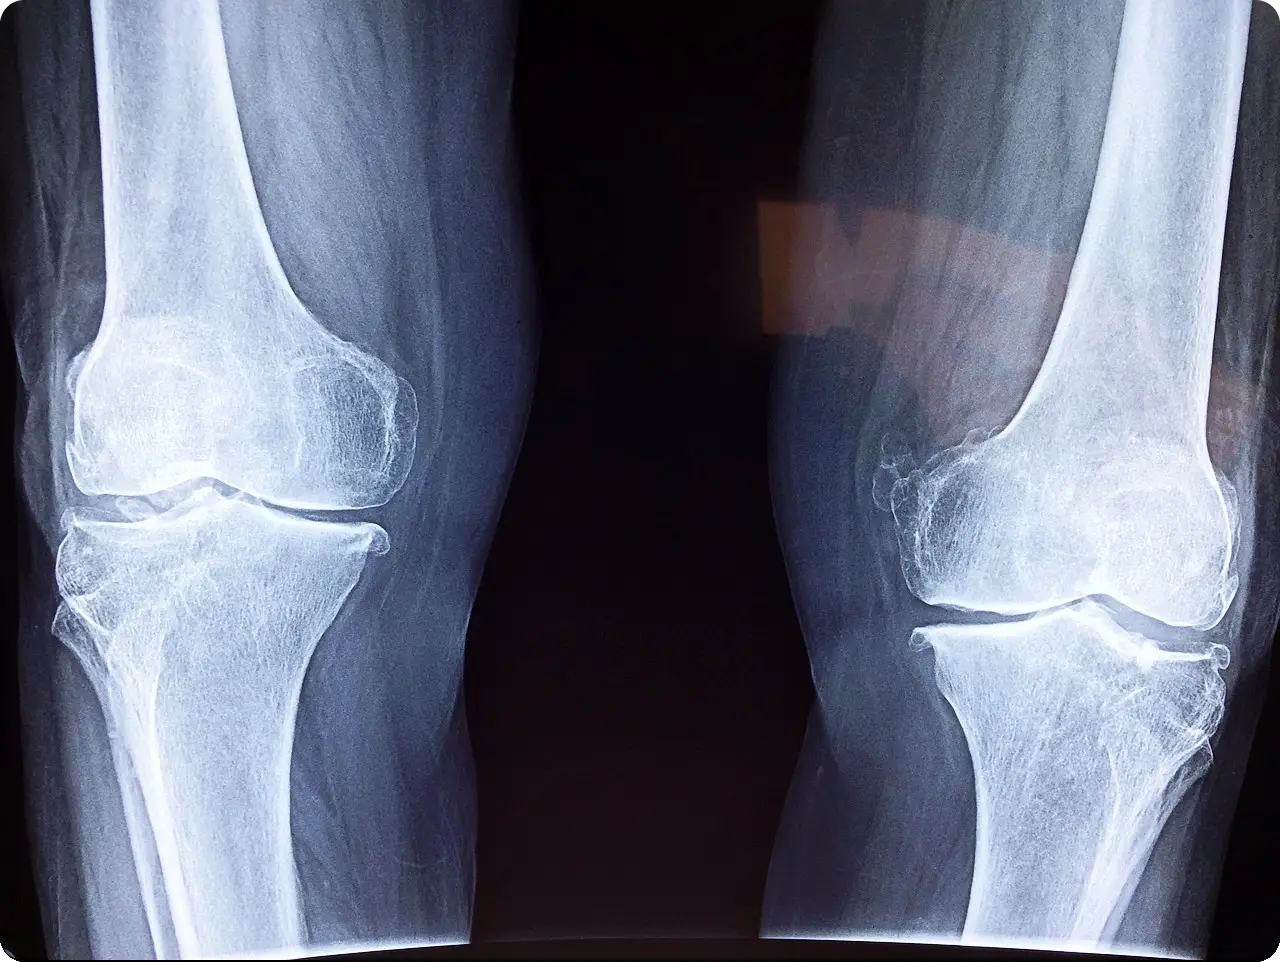 무릎 수술을 위한 엑스레이 사진이다.